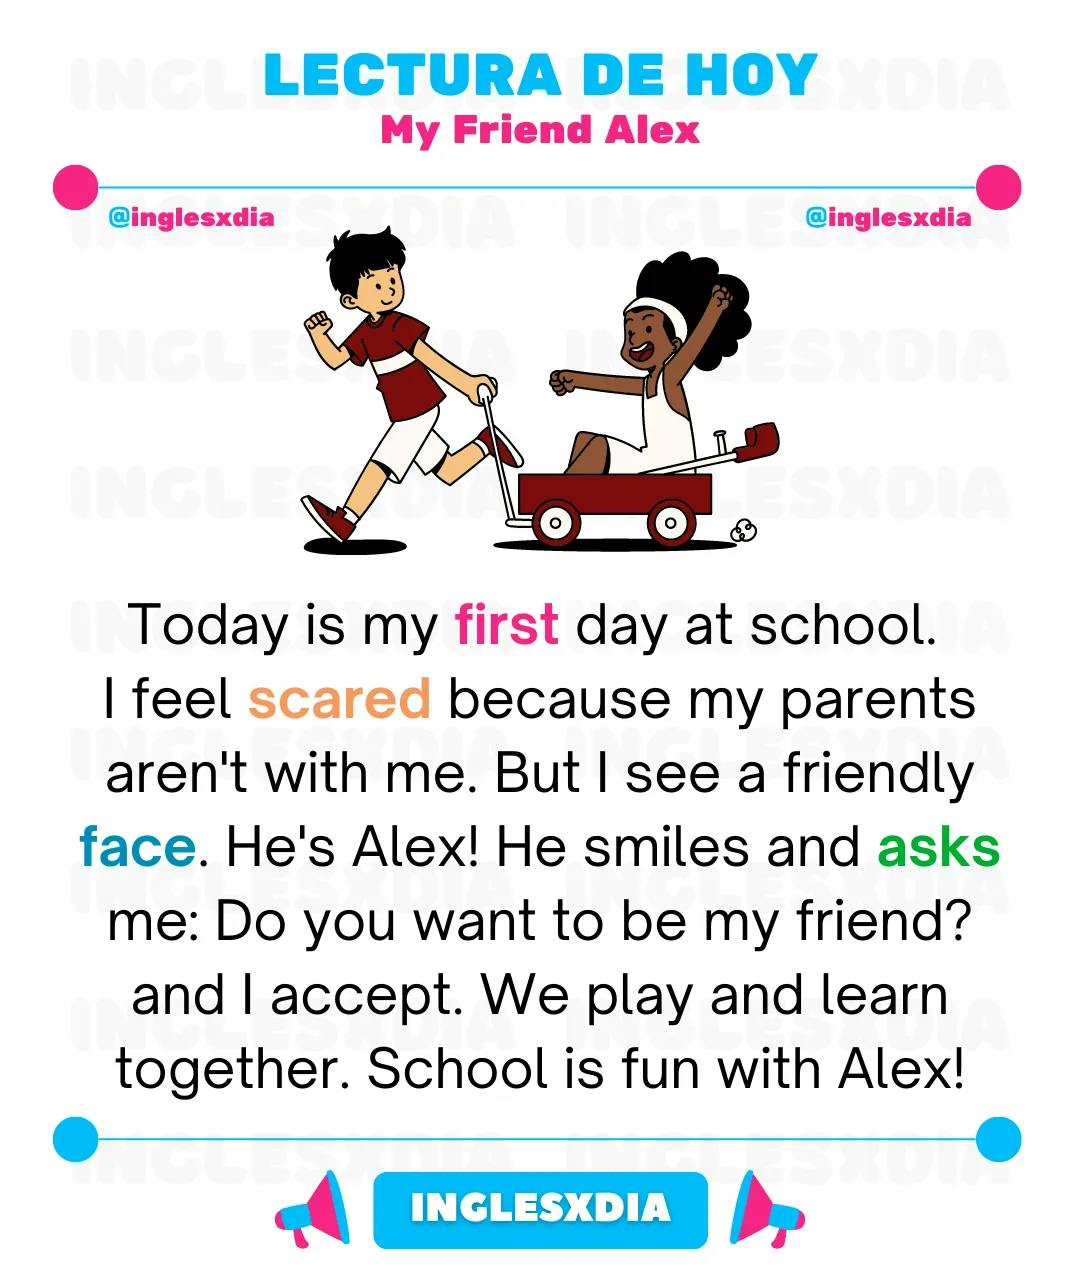 My Friend Alex